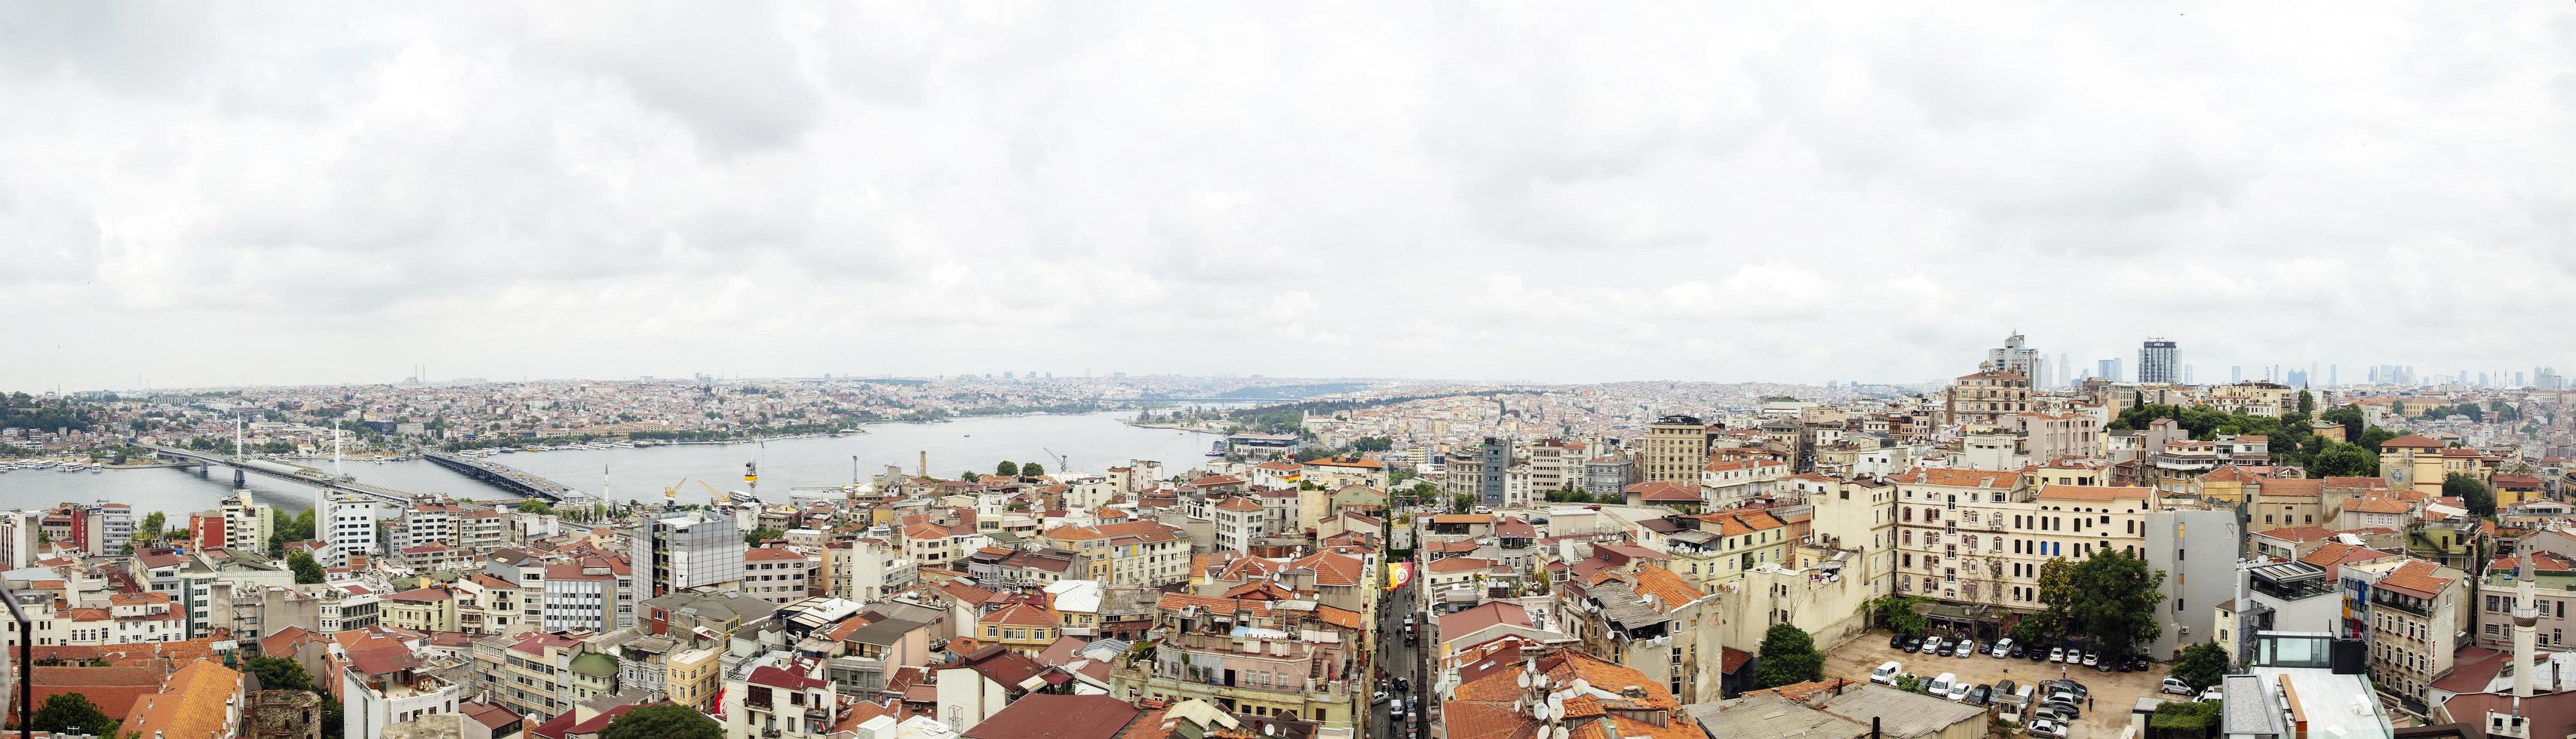 Istambul, Turquia, 21 de junho de 2019 - vista aérea em casas e prédios públicos em Istambul, Turquia. Istambul é uma grande cidade da Turquia, com mais de 15 milhões de habitantes. foto